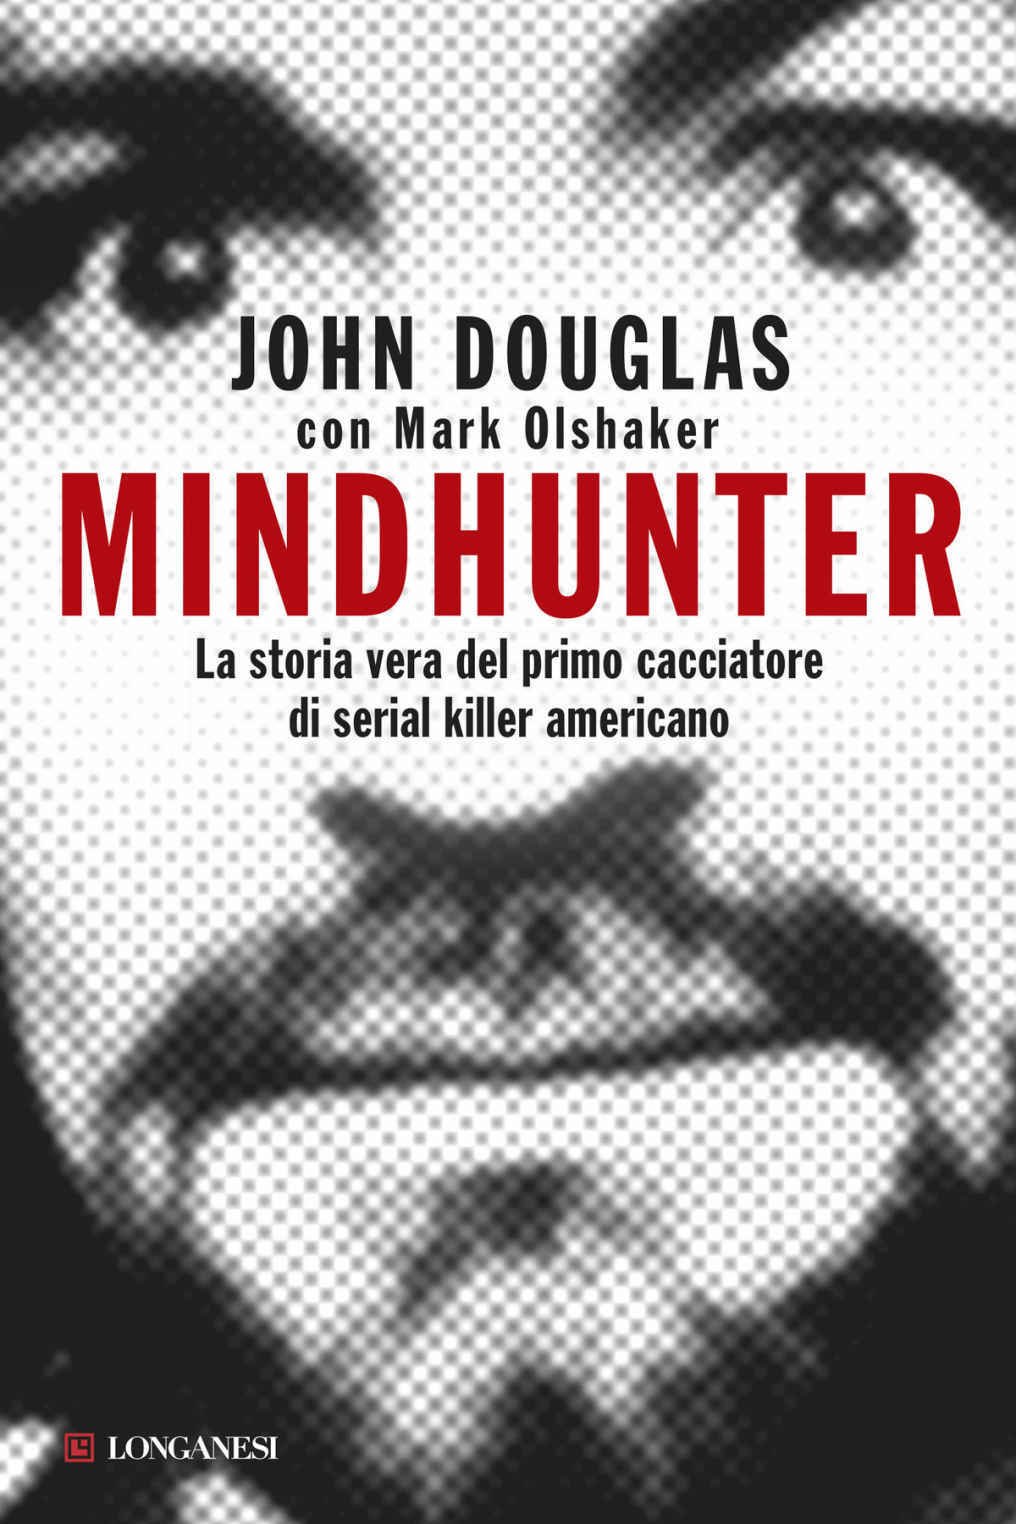 Il volto di Charles Manson sulla copertina del libro Mindhunter: La storia vera del primo cacciatore di serial killer americano